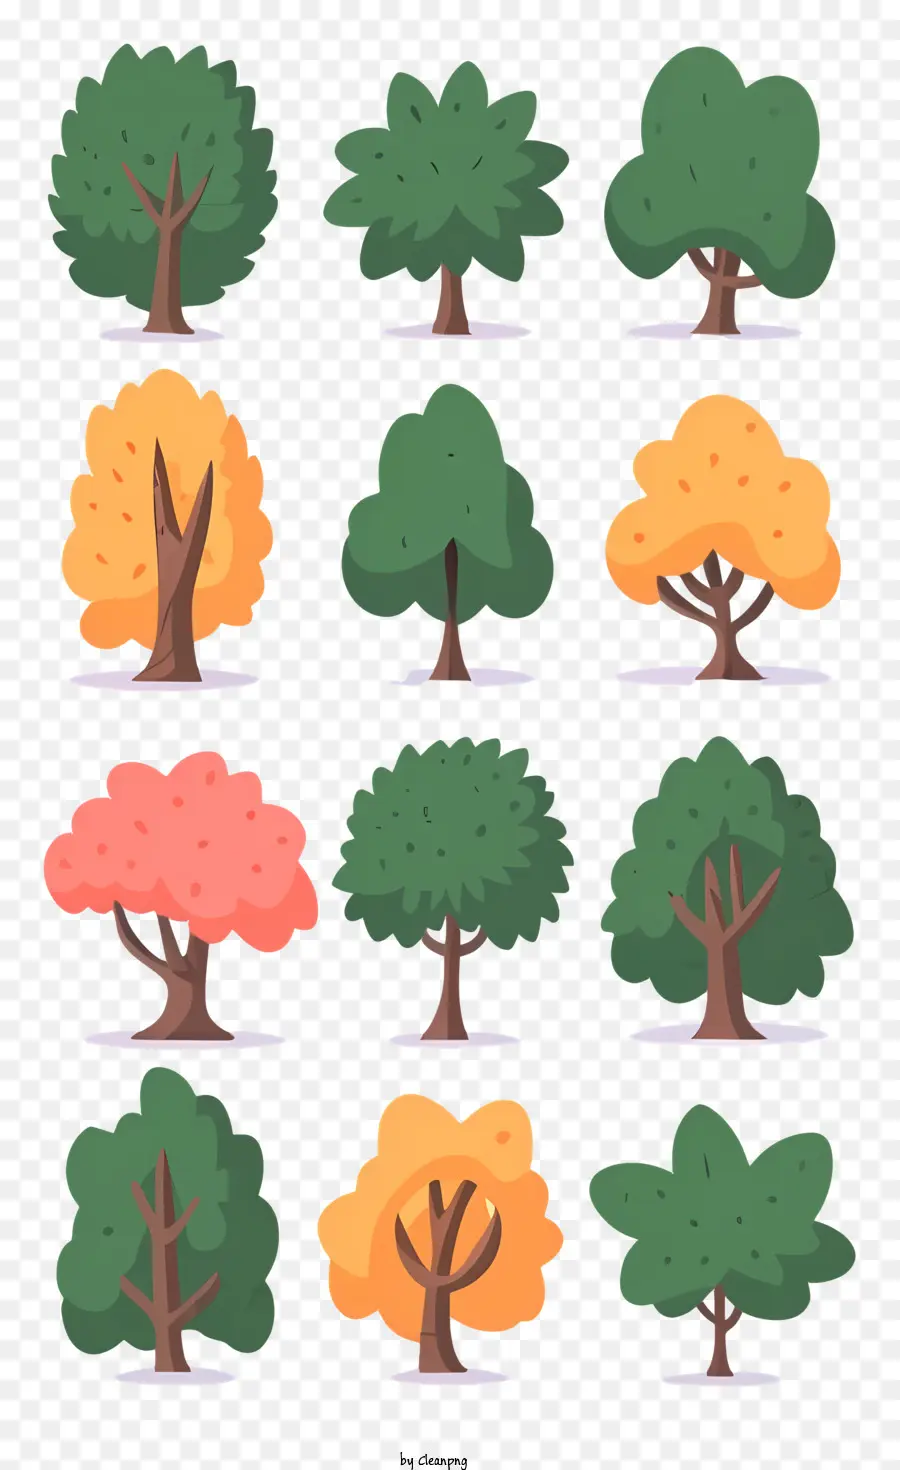 Baum Blätter - Sammlung von Bildern, die verschiedene Arten von Bäumen zeigen